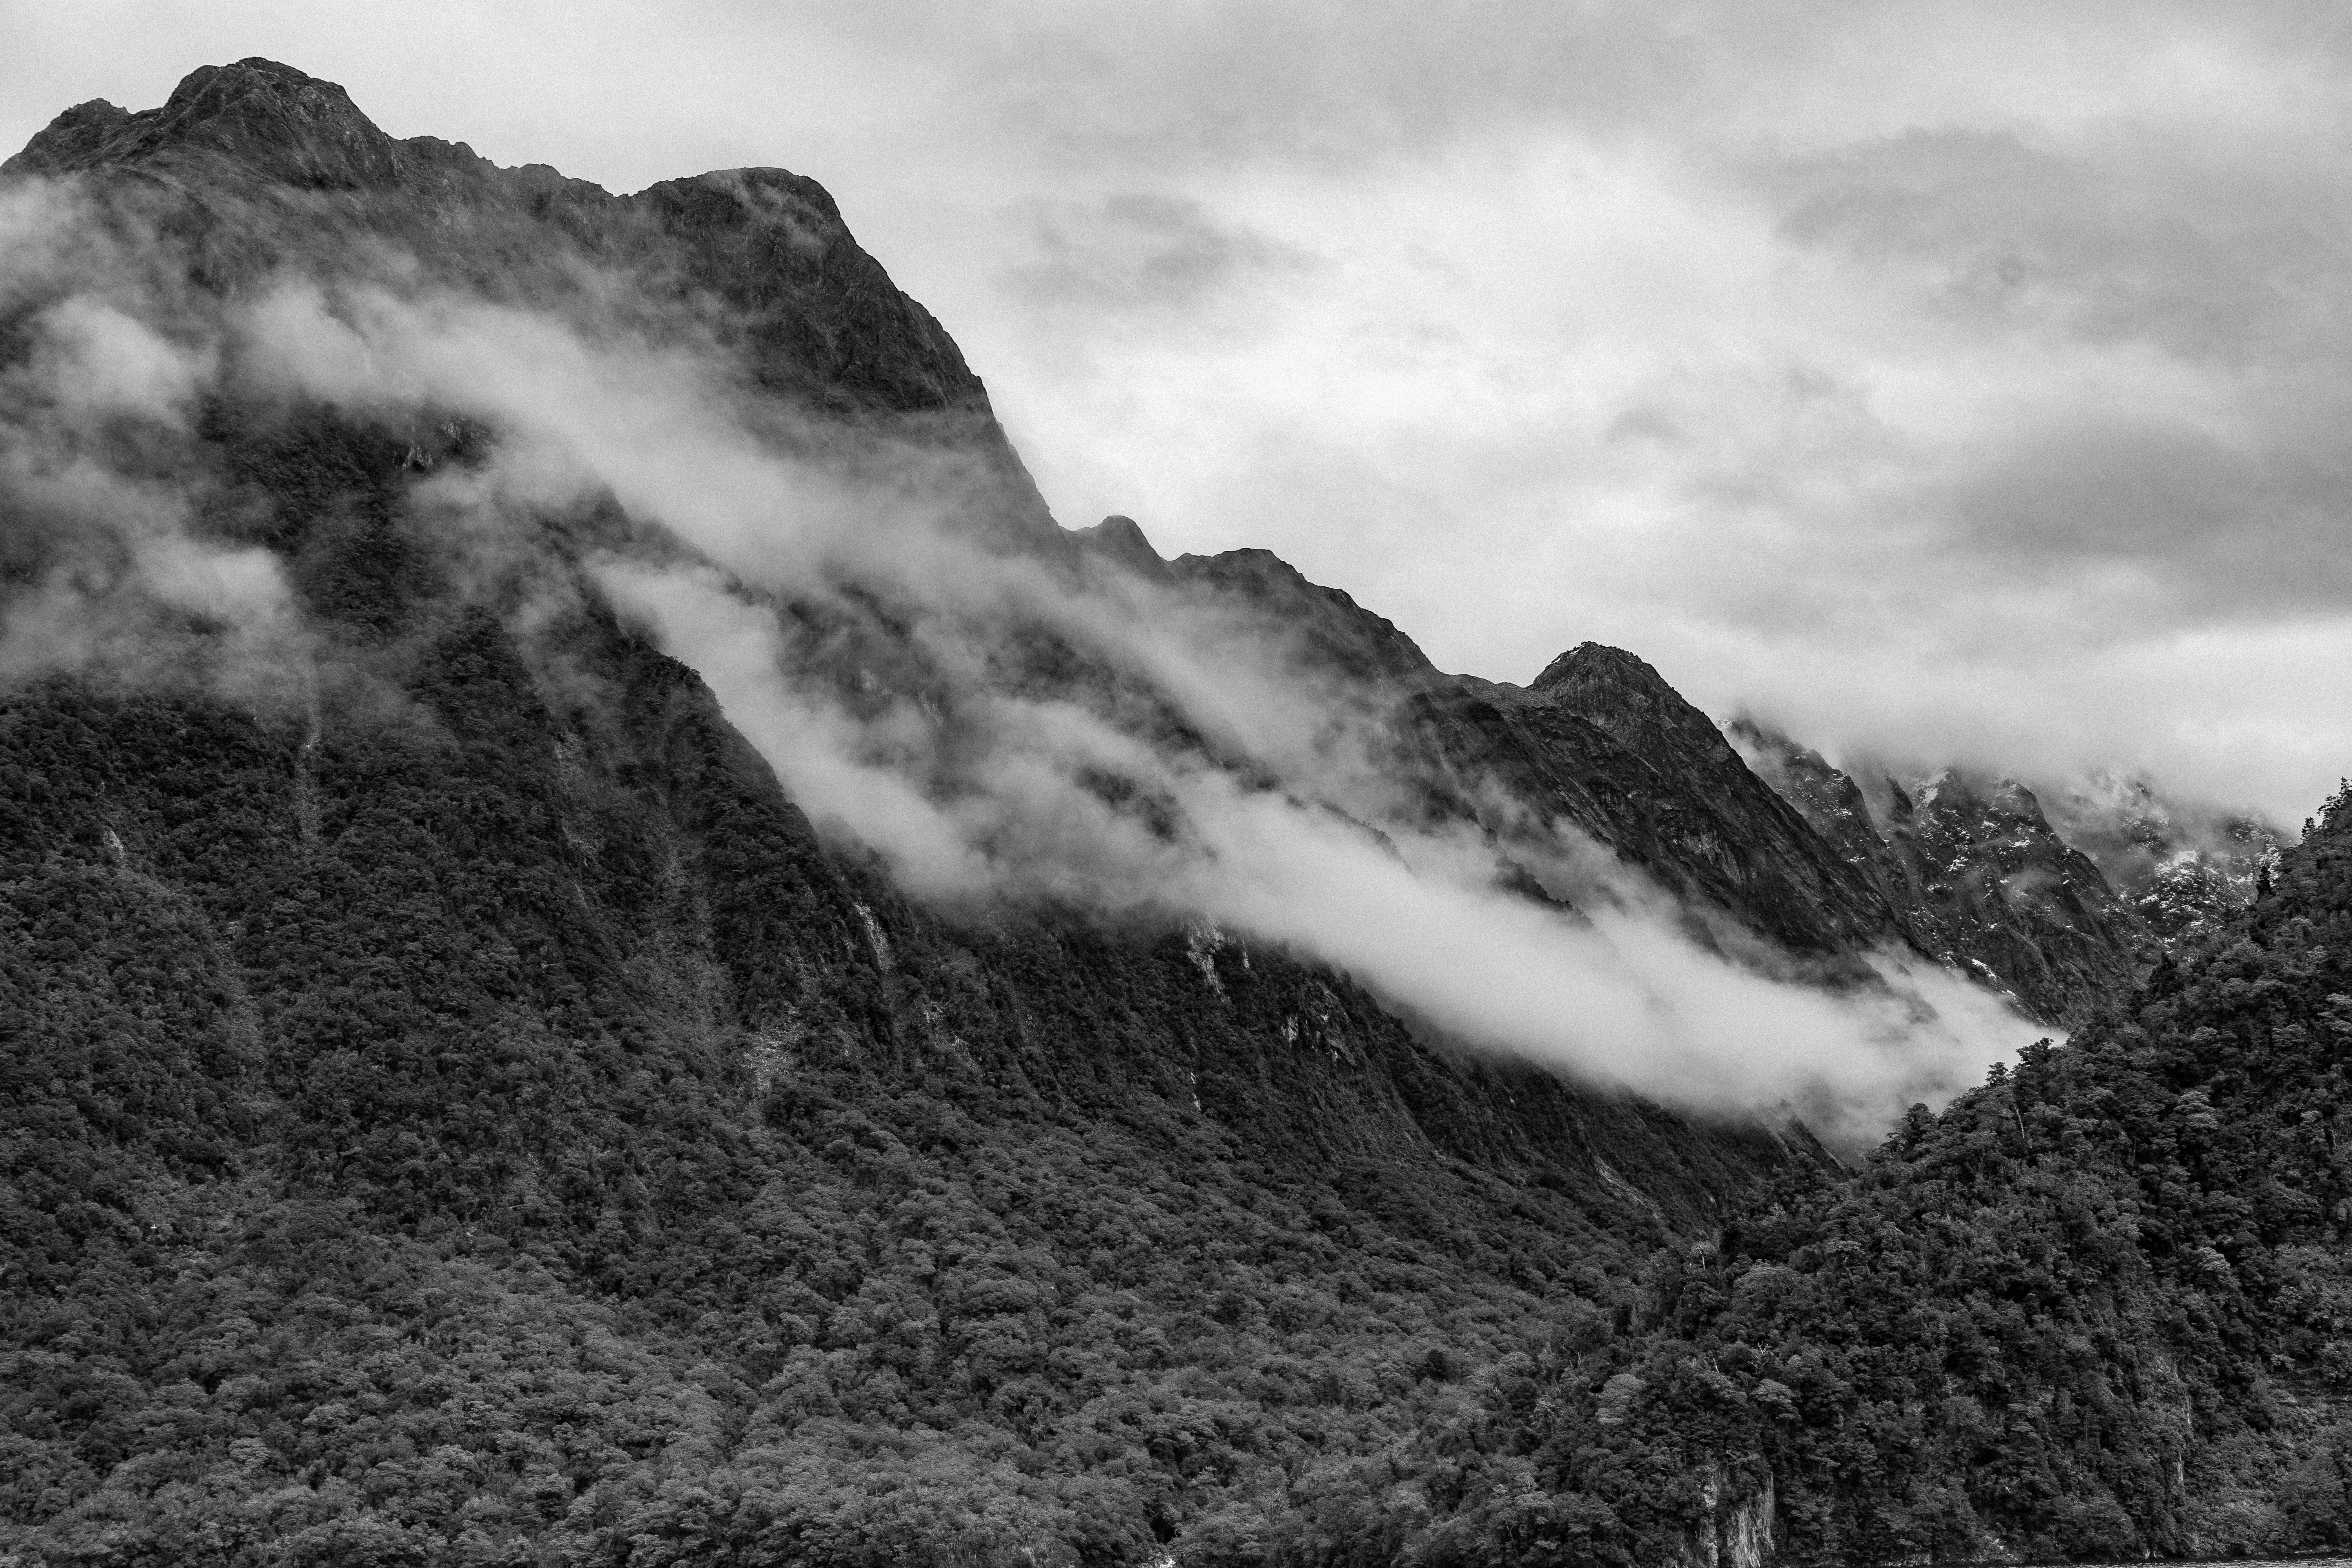 Imagem em preto e branco da névoa sobre as montanhas.